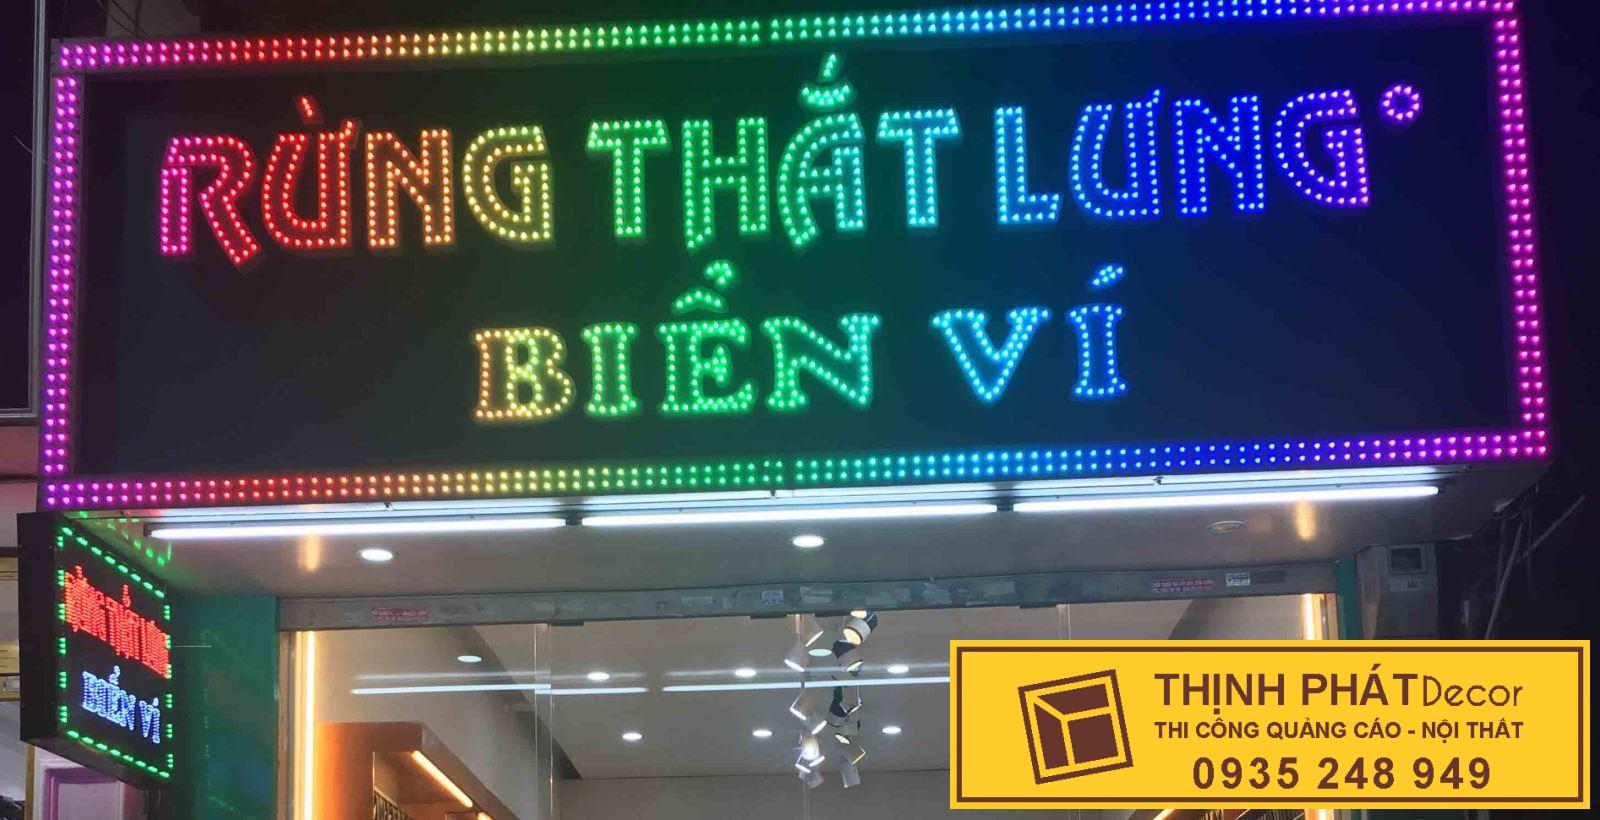 Thi công bảng hiệu đèn led giá rẻ quận Bình Tân